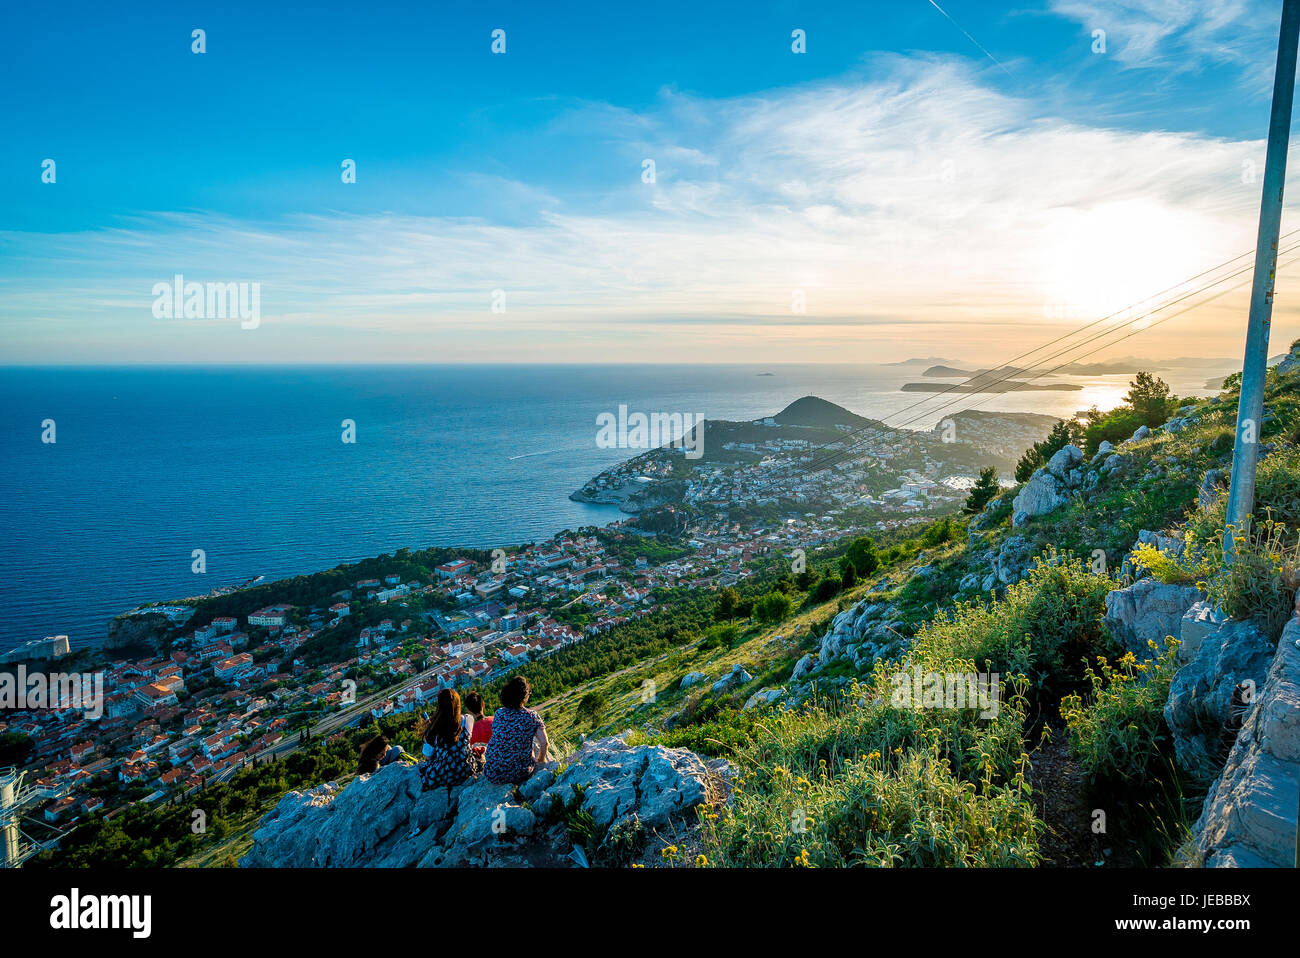 Los turistas observan la puesta de sol sobre el mar Adriático desde la cima del monte Srd, Dubrovnik. Foto de stock